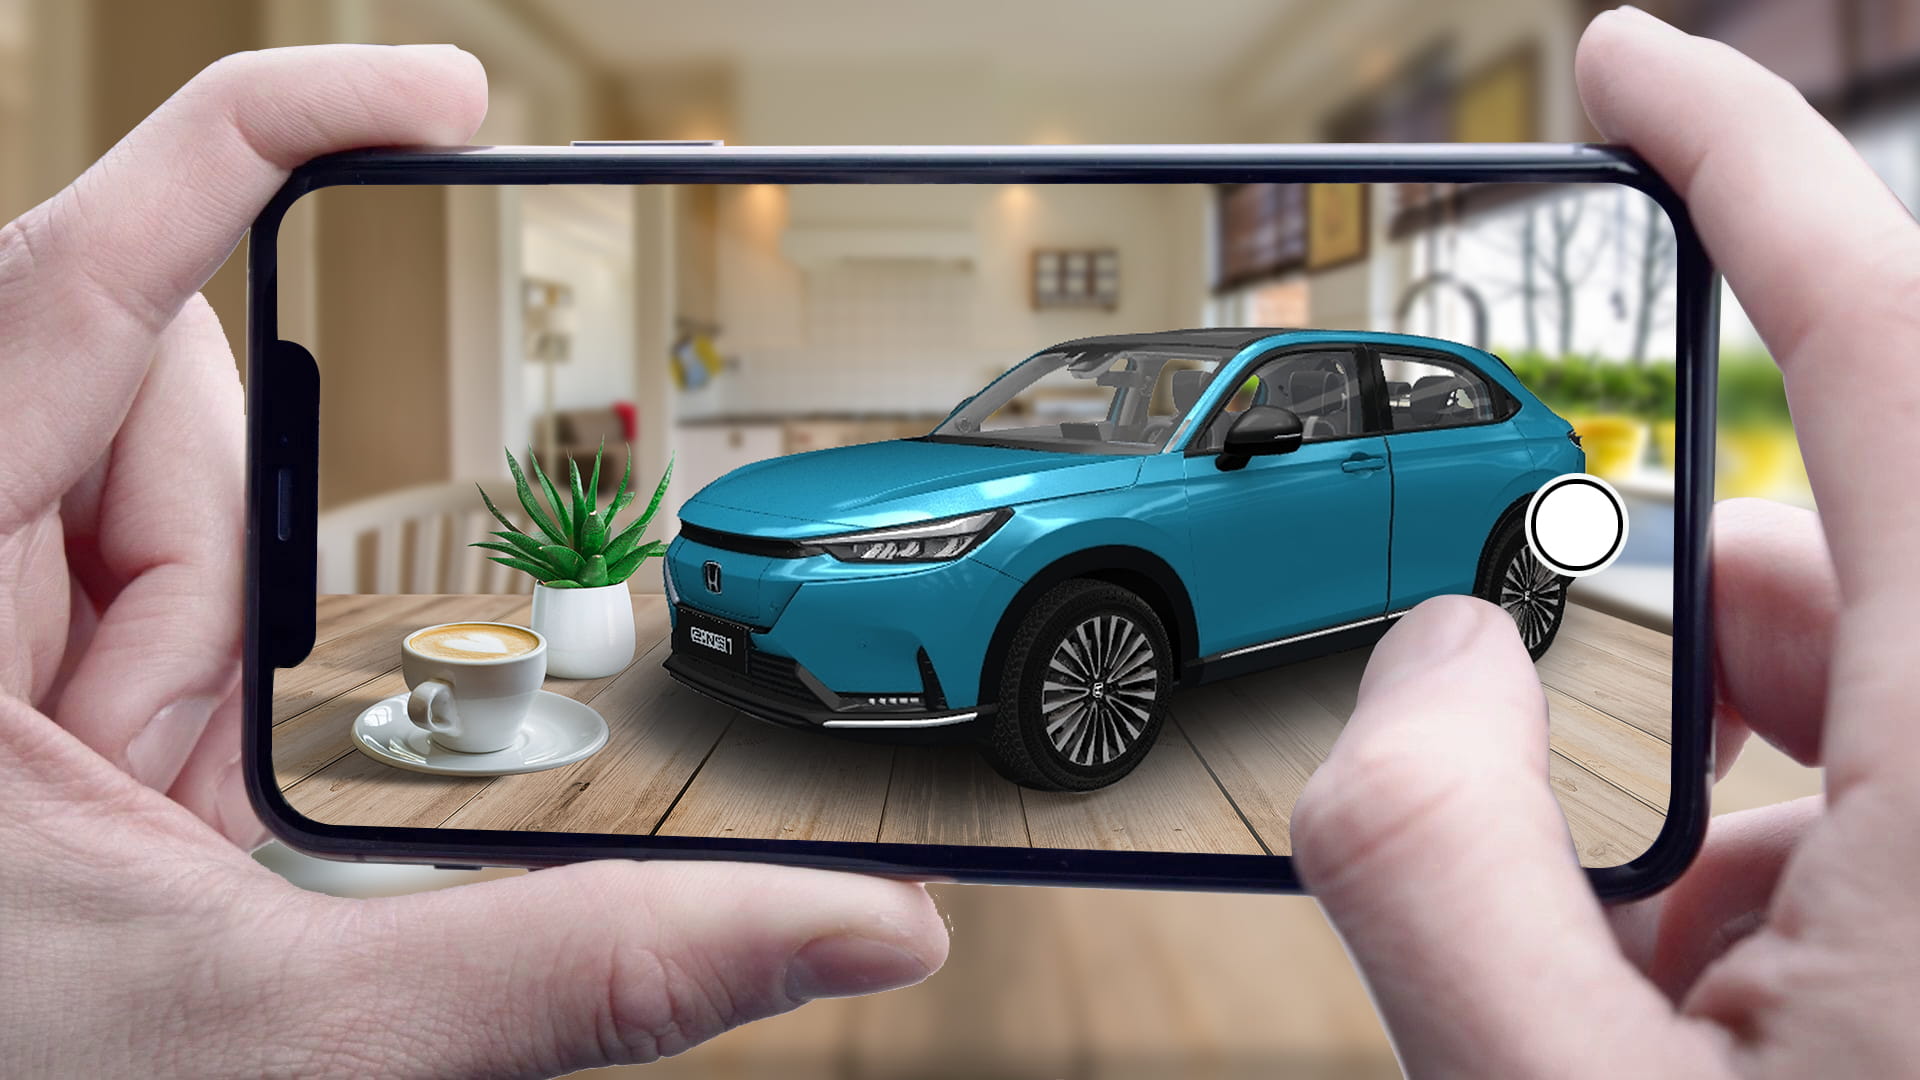 八方互动科技有限公司官网Web 3D虚拟看车产品智能数字营销解决方案全景